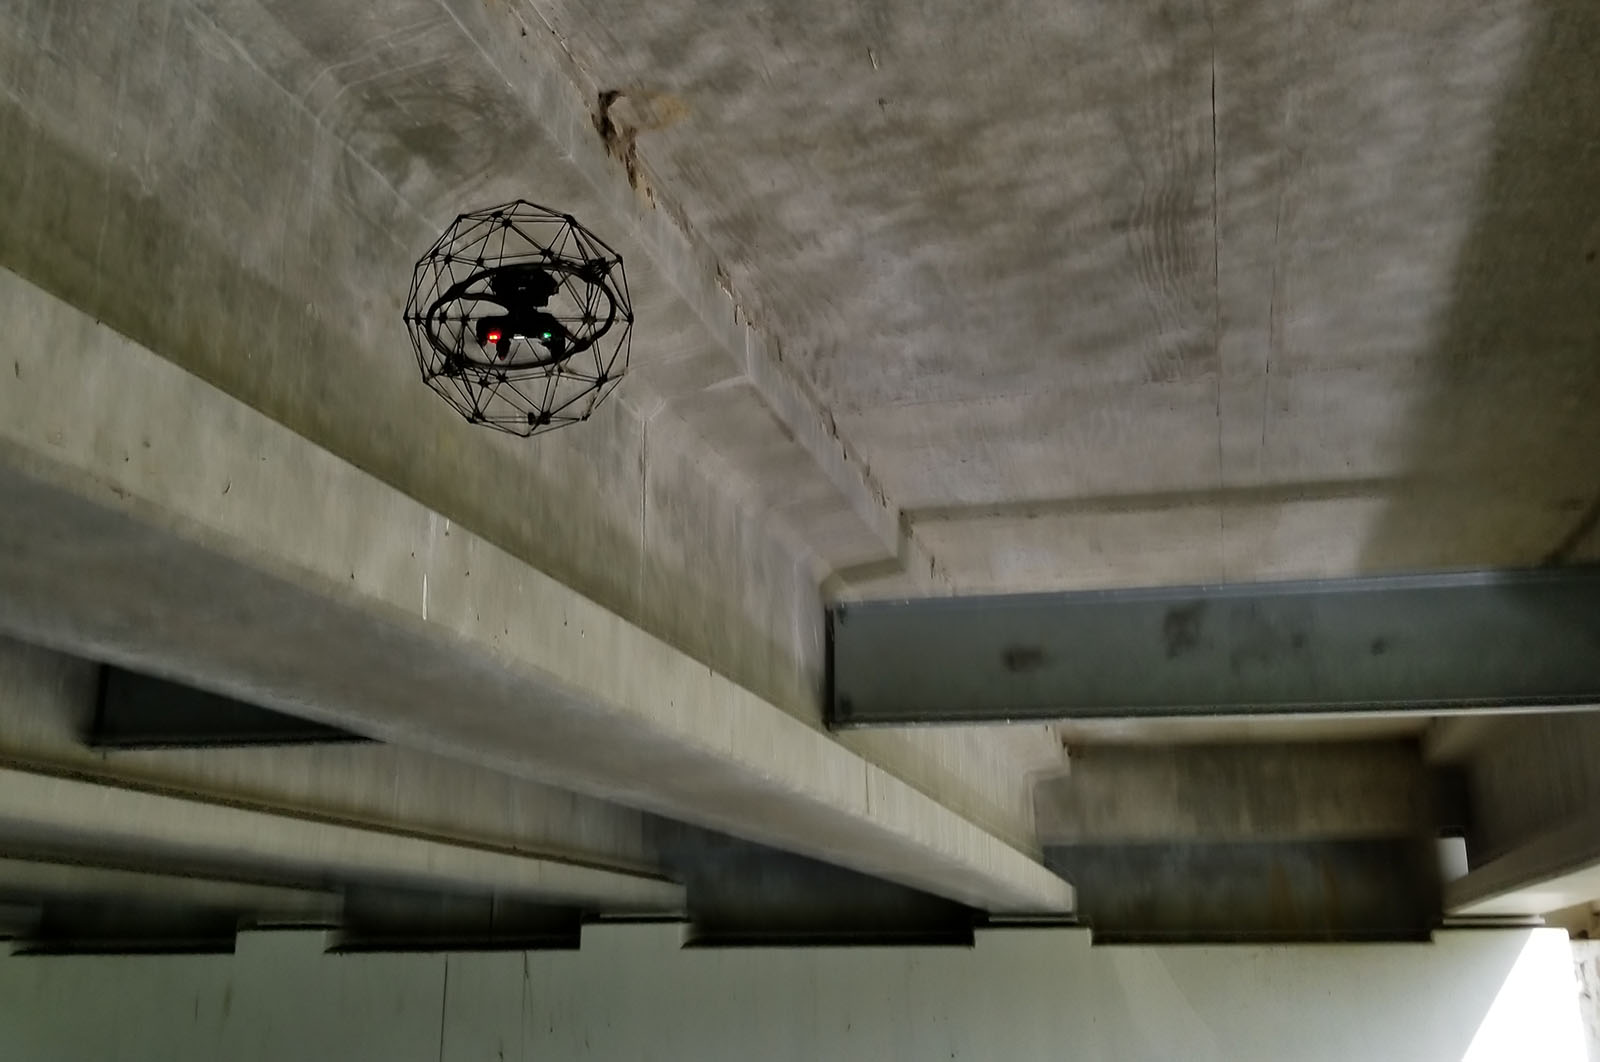 Indoor Drones in Bridge Inspection: Between Beams and inside Box Girder